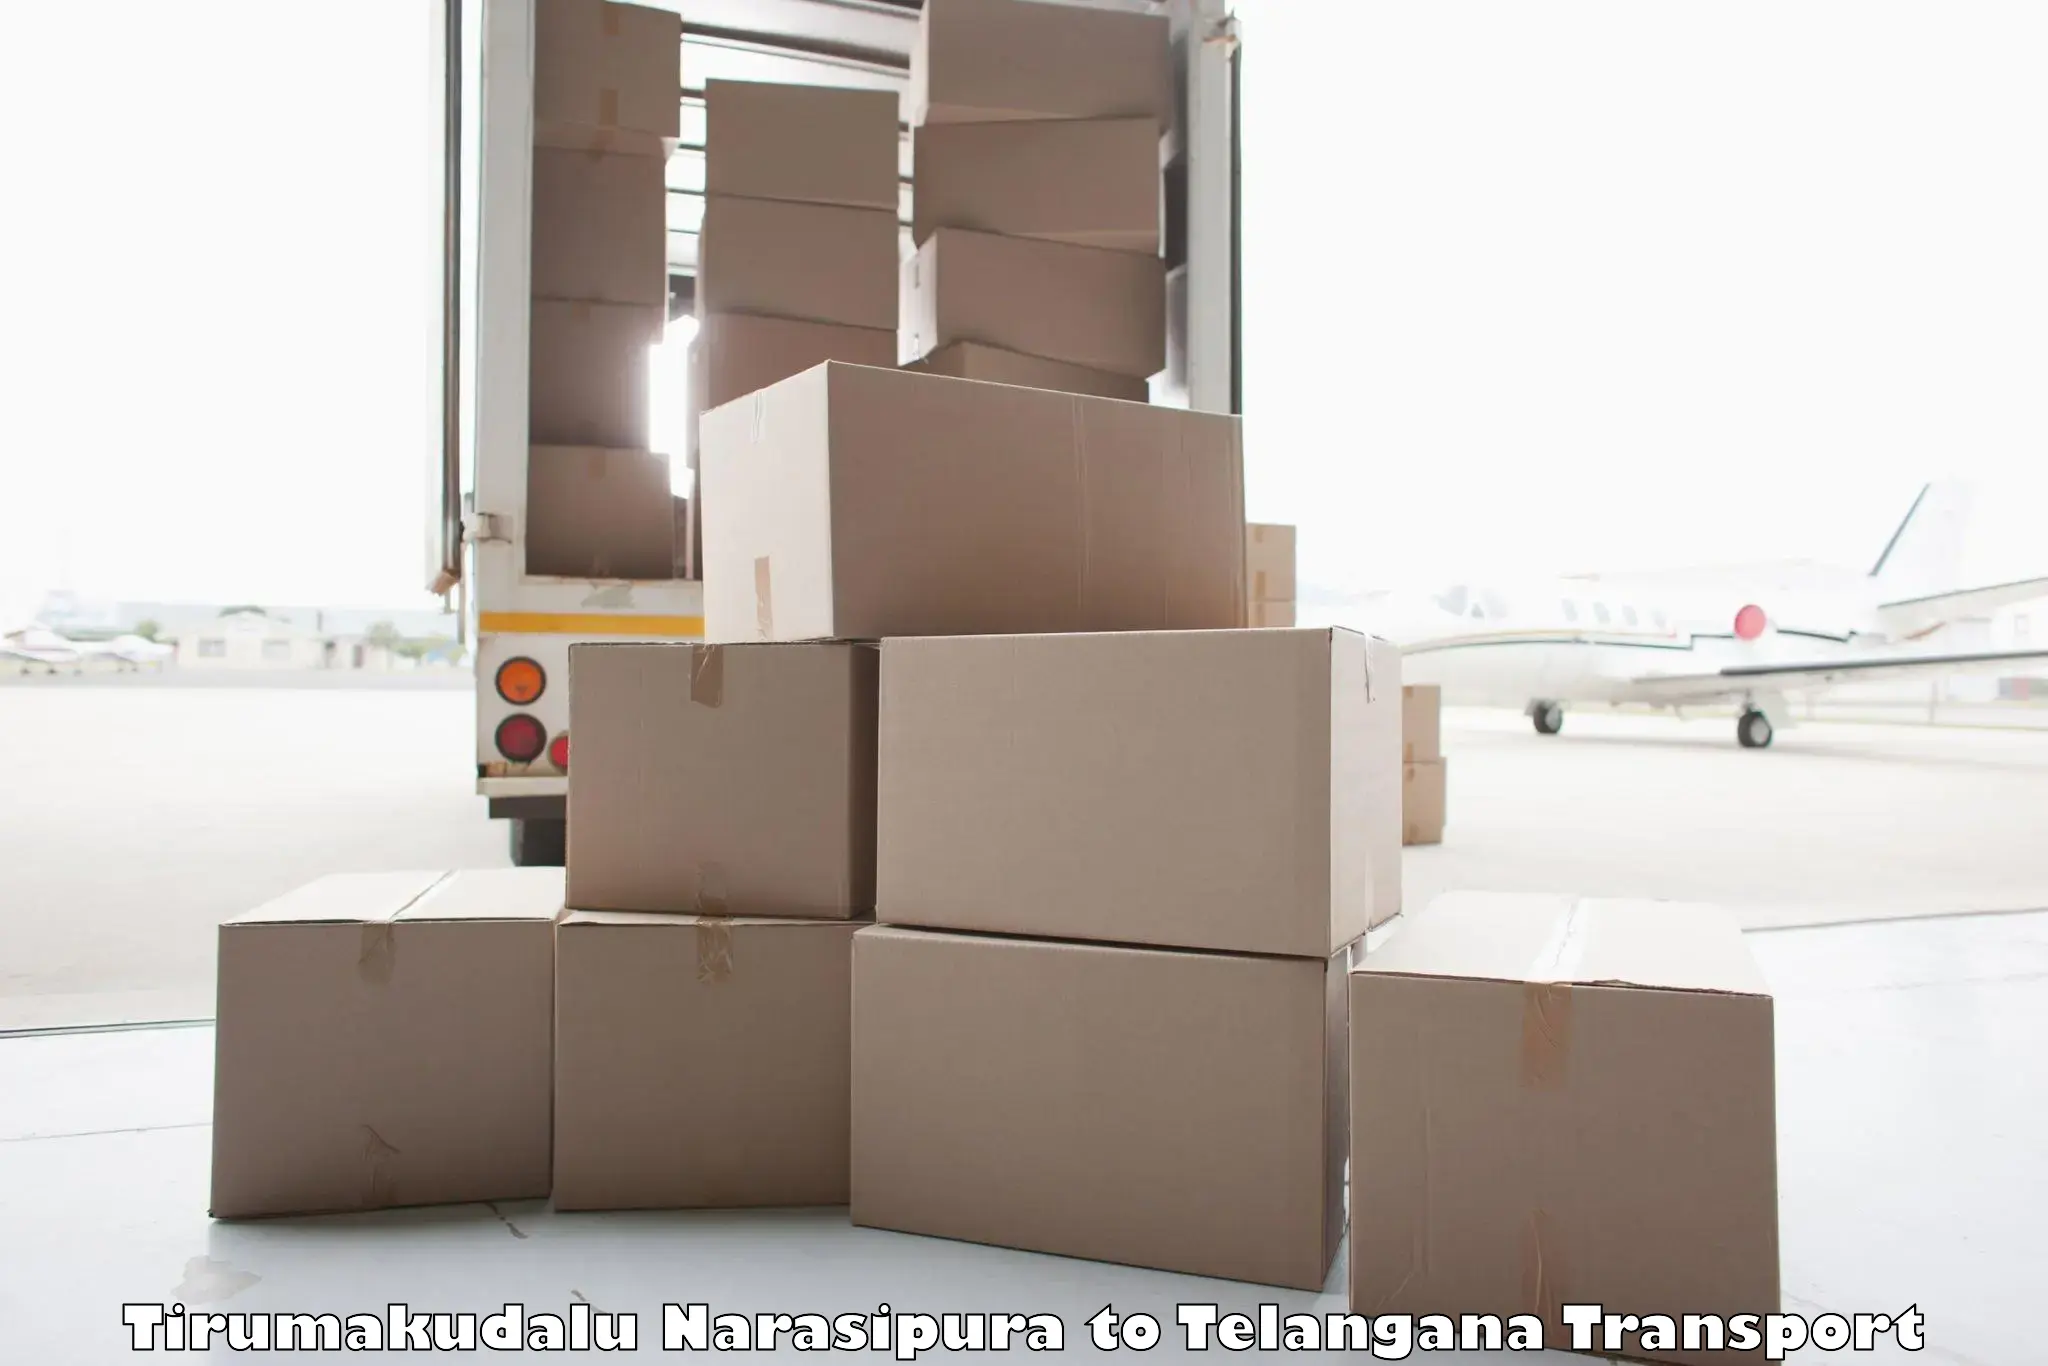 Air cargo transport services Tirumakudalu Narasipura to Balanagar